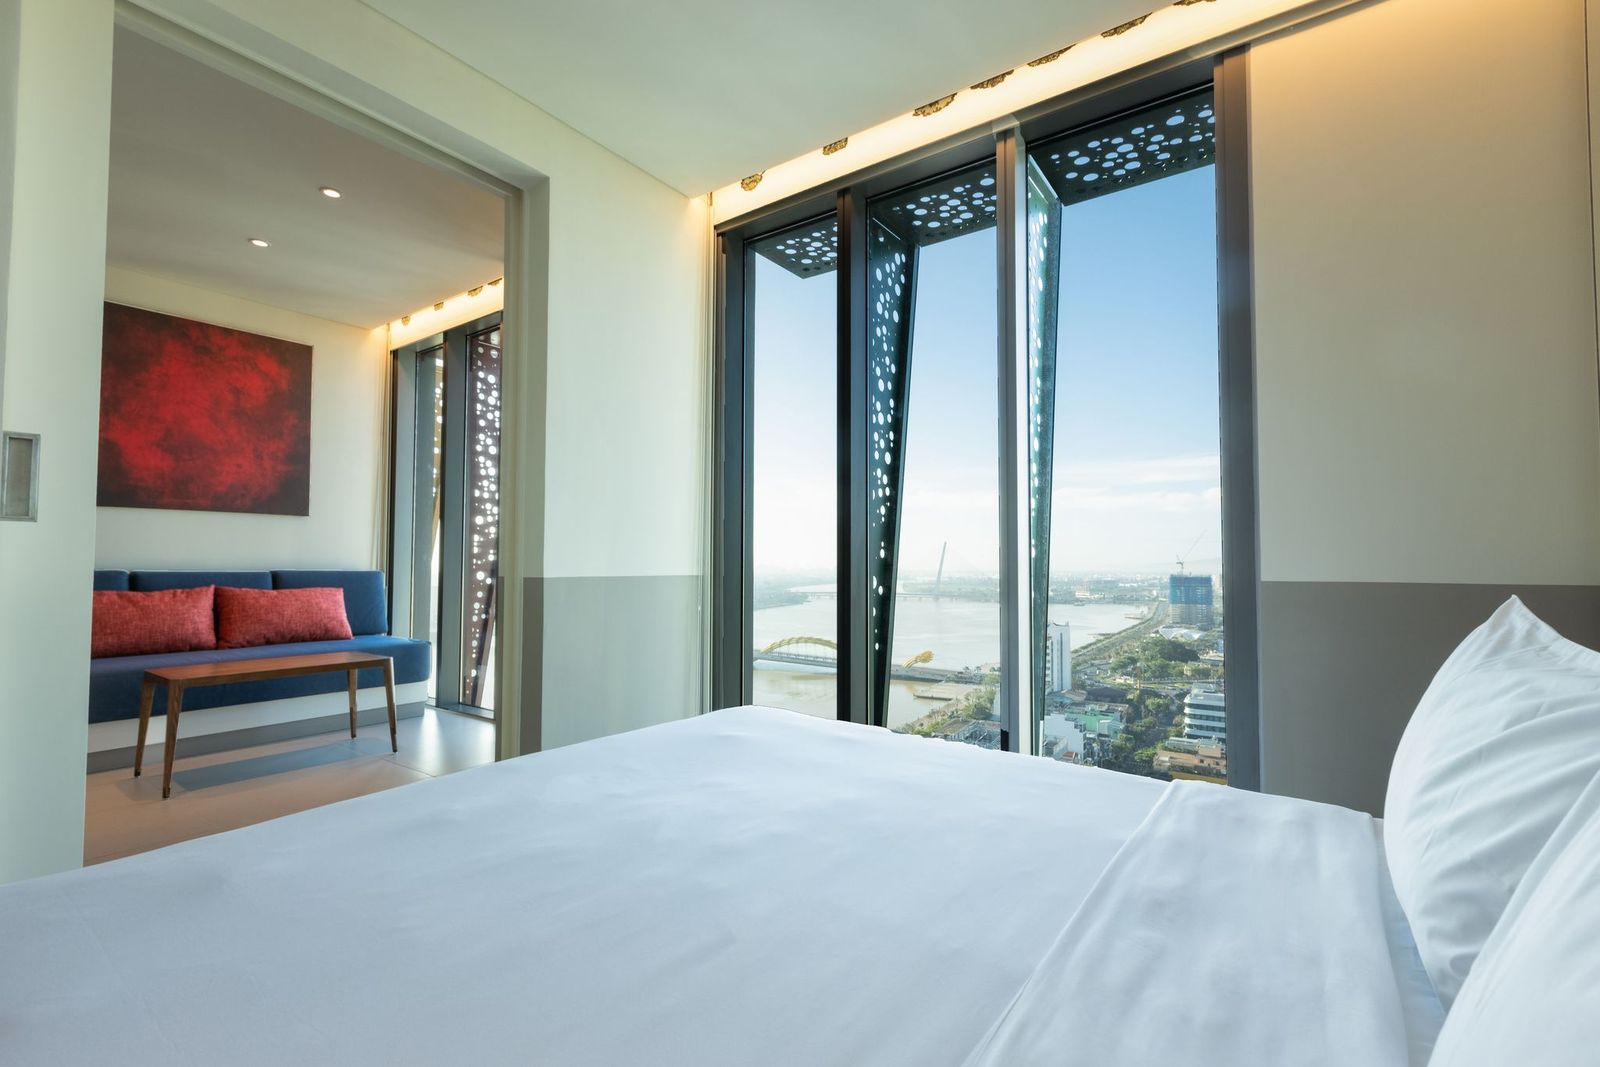  Wink Hotels – Điểm đến hấp dẫn mới cho du khách tại Đà Nẵng